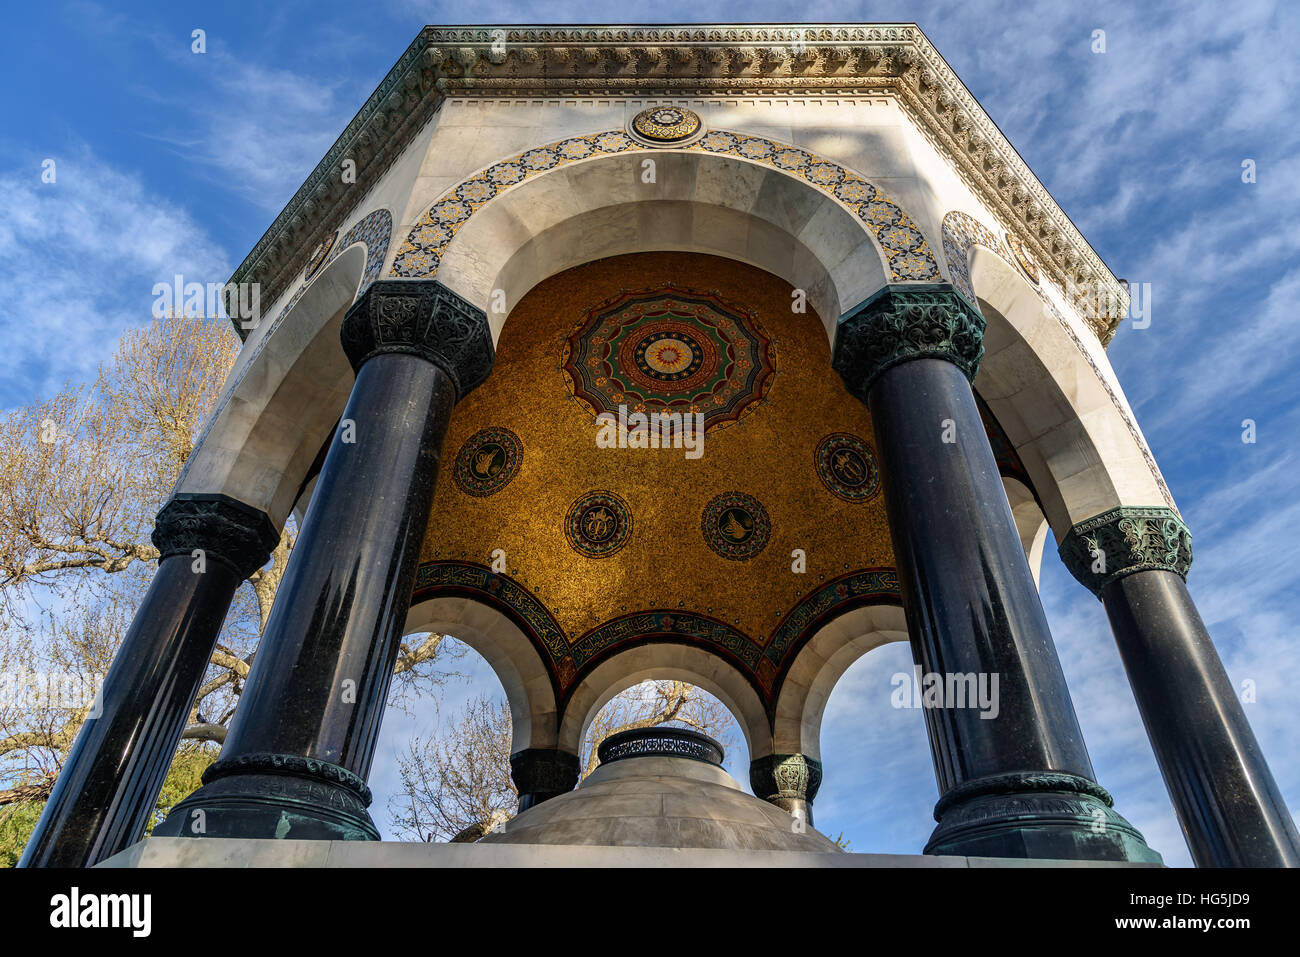 Der deutsche Brunnen ist ein Pavillon gestaltete Brunnen am nördlichen Ende des alten Hippodrom, Istanbul, Türkei Stockfoto